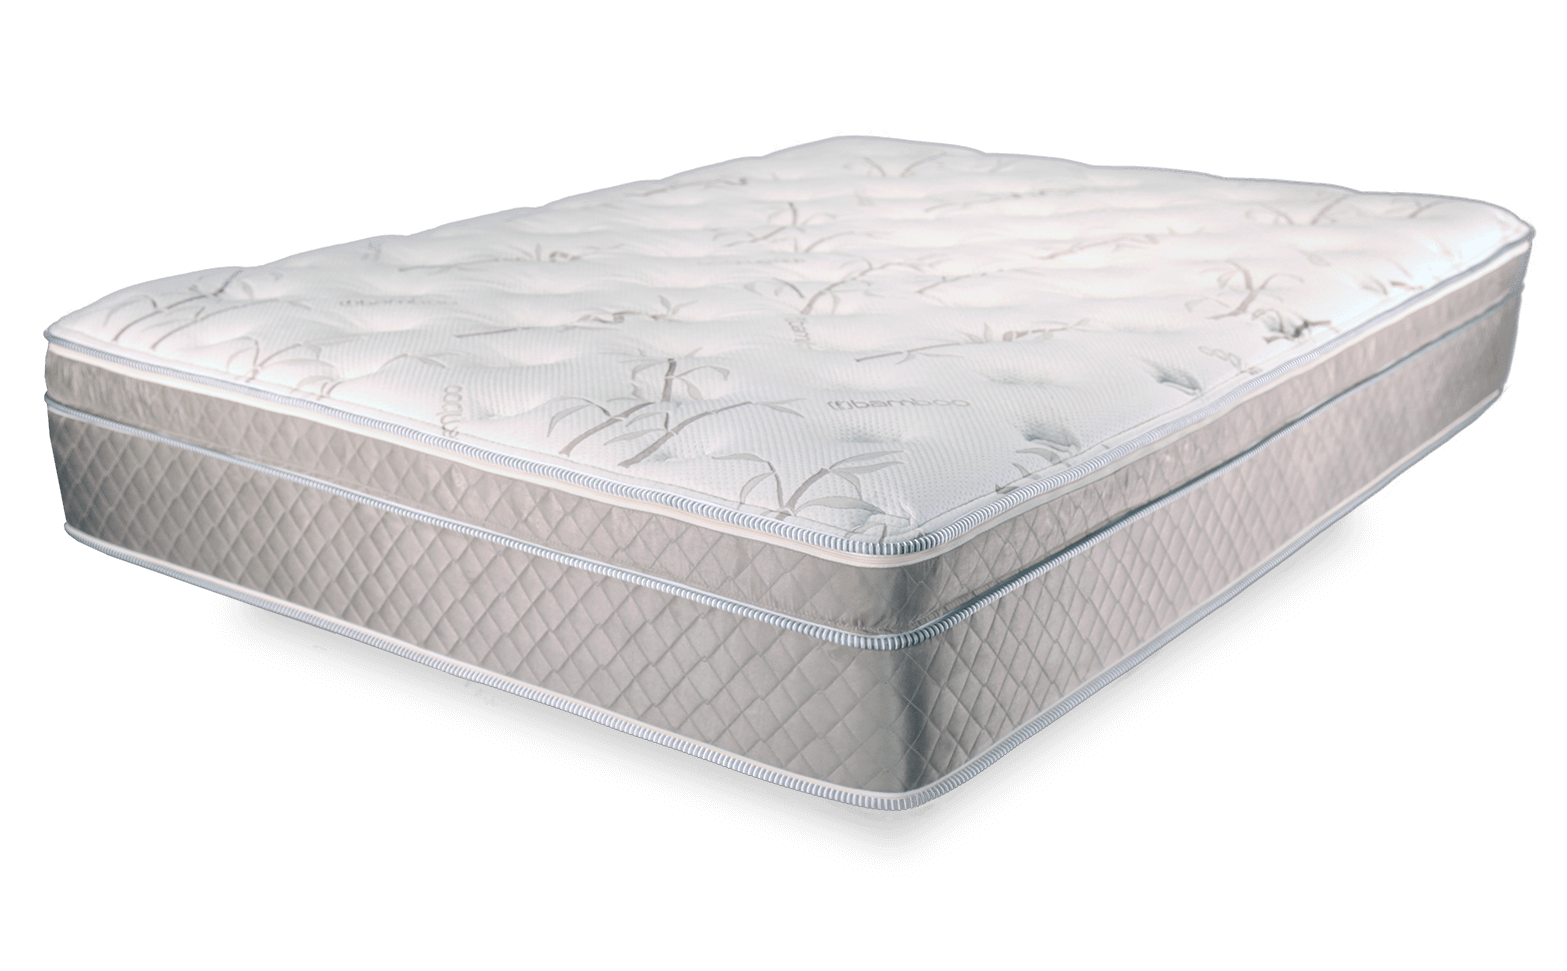 foam topping mattress naples